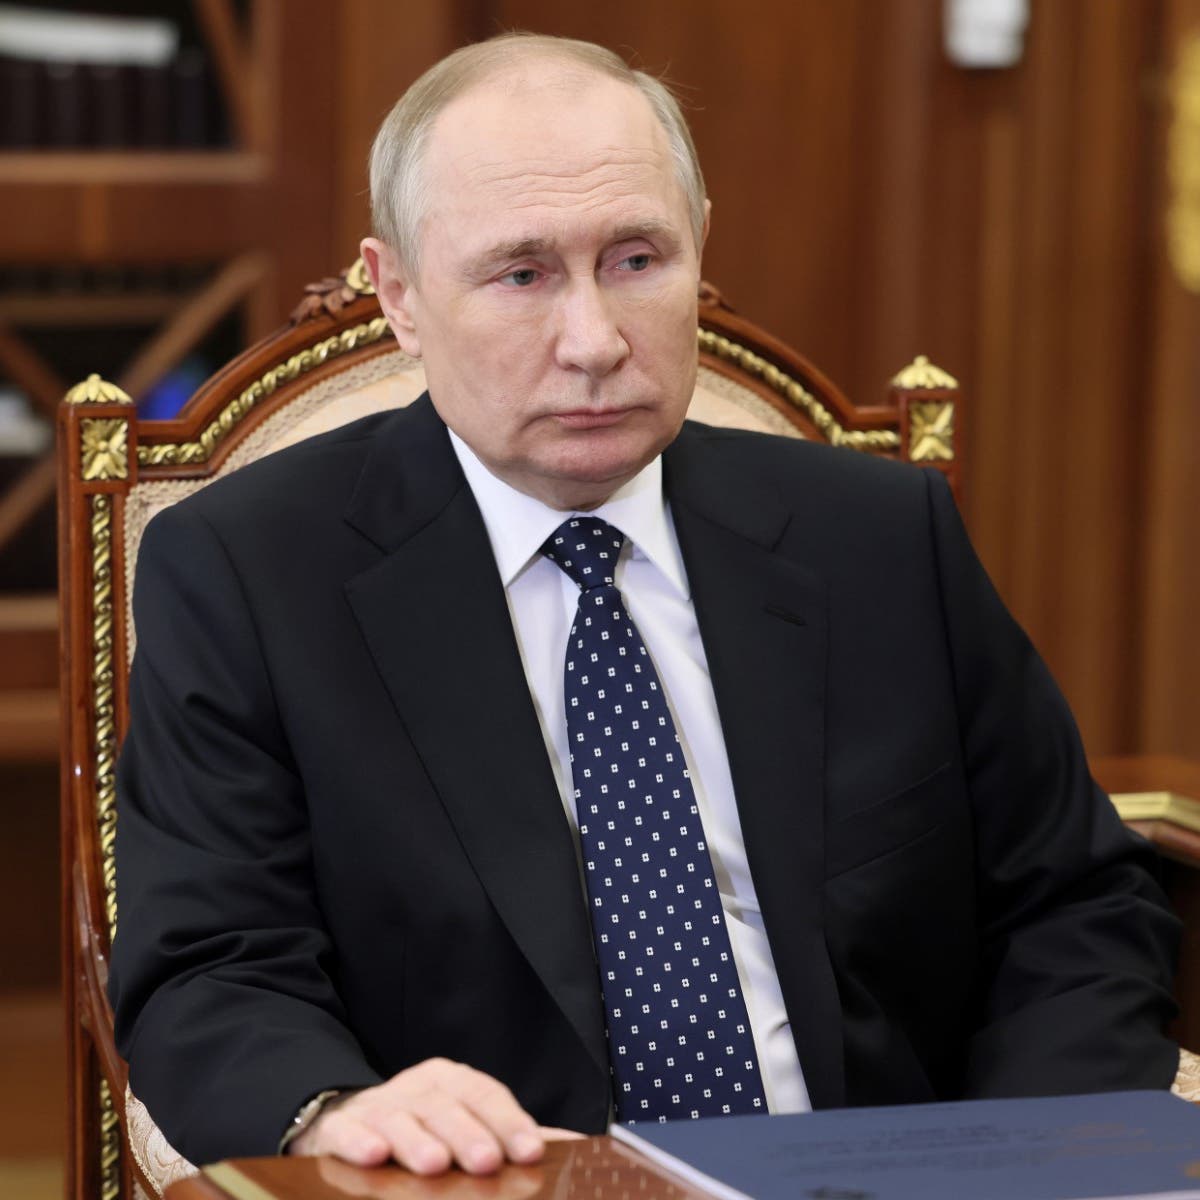 موسكو: بوتين منفتح على الحوار مع أوكرانيا